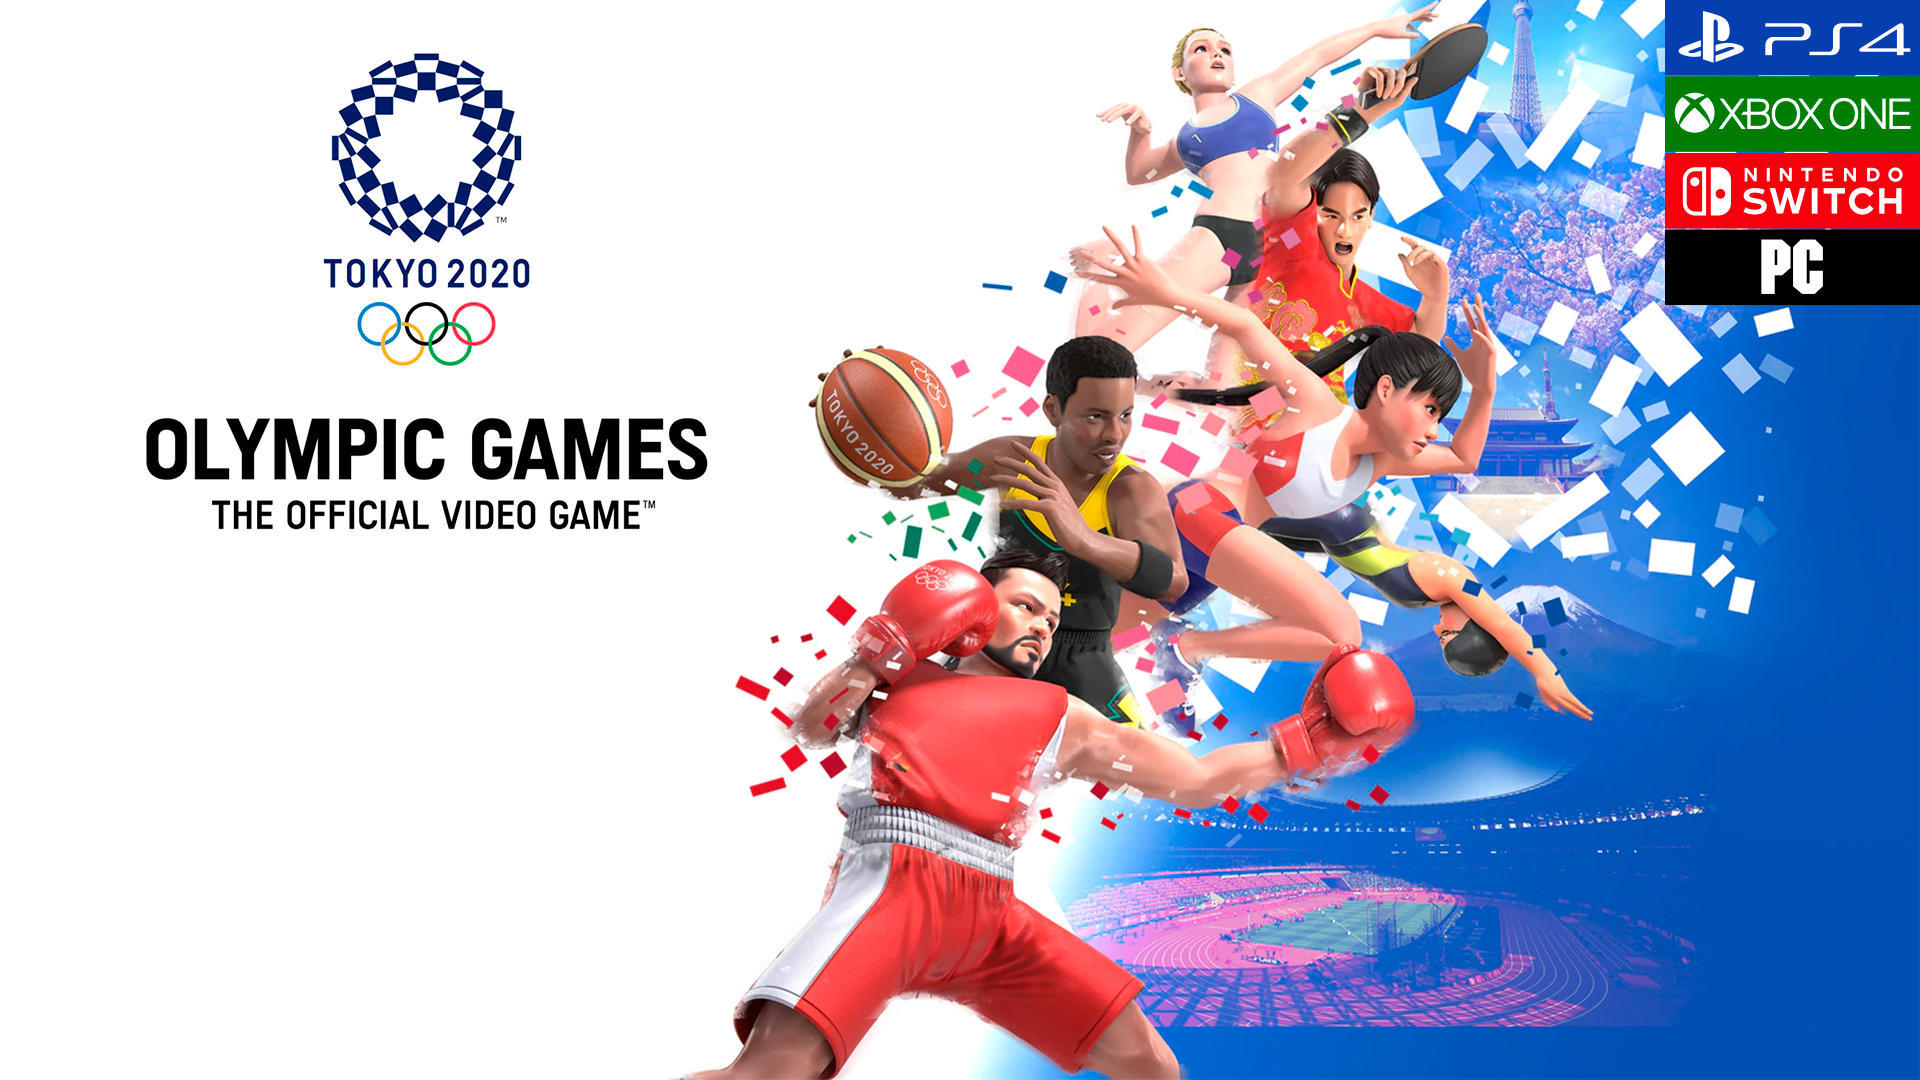 Juegos Olmpicos de Tokyo 2020: El videojuego oficial